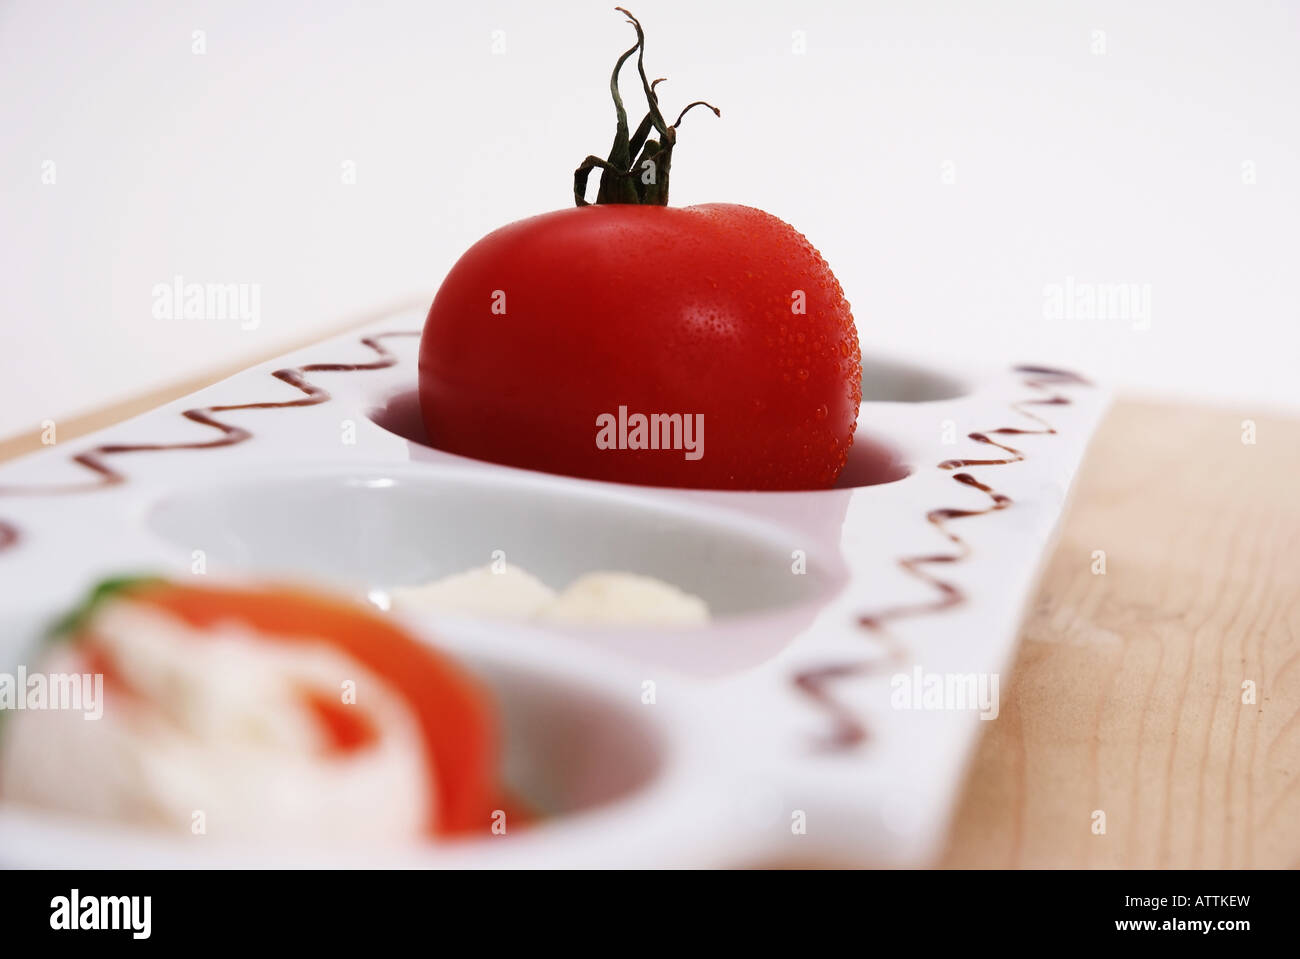 Tomates sur une assiette blanche Tomate auf einer weissen Servierplatte Banque D'Images